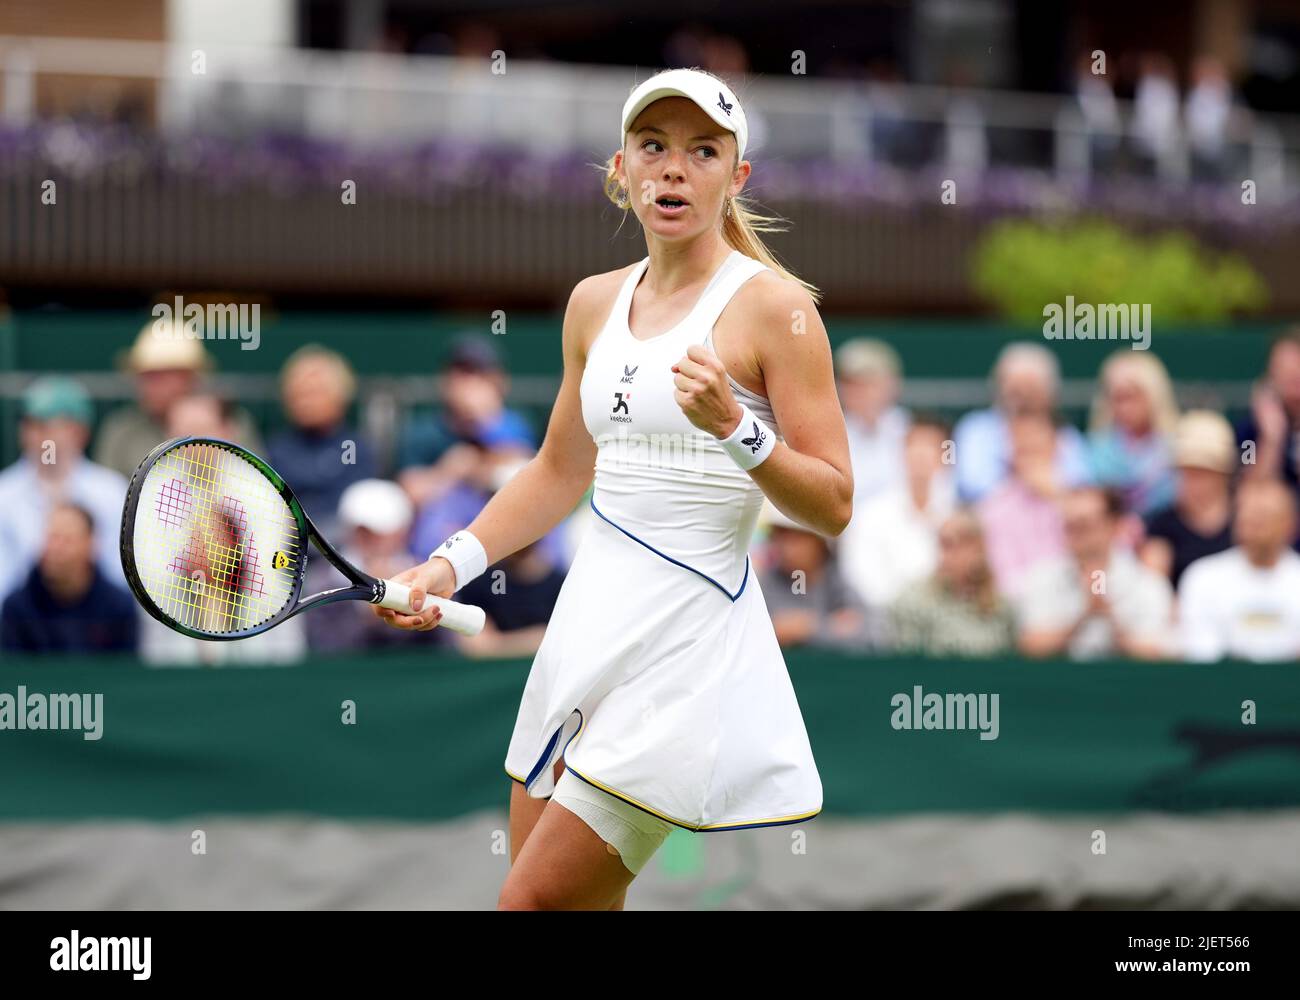 Katie Swan durante su partido contra Marta Kostyuk en el segundo día del Campeonato de Wimbledon de 2022 en el All England Lawn Tennis and Croquet Club, Wimbledon. Fecha de la foto: Martes 28 de junio de 2022. Foto de stock